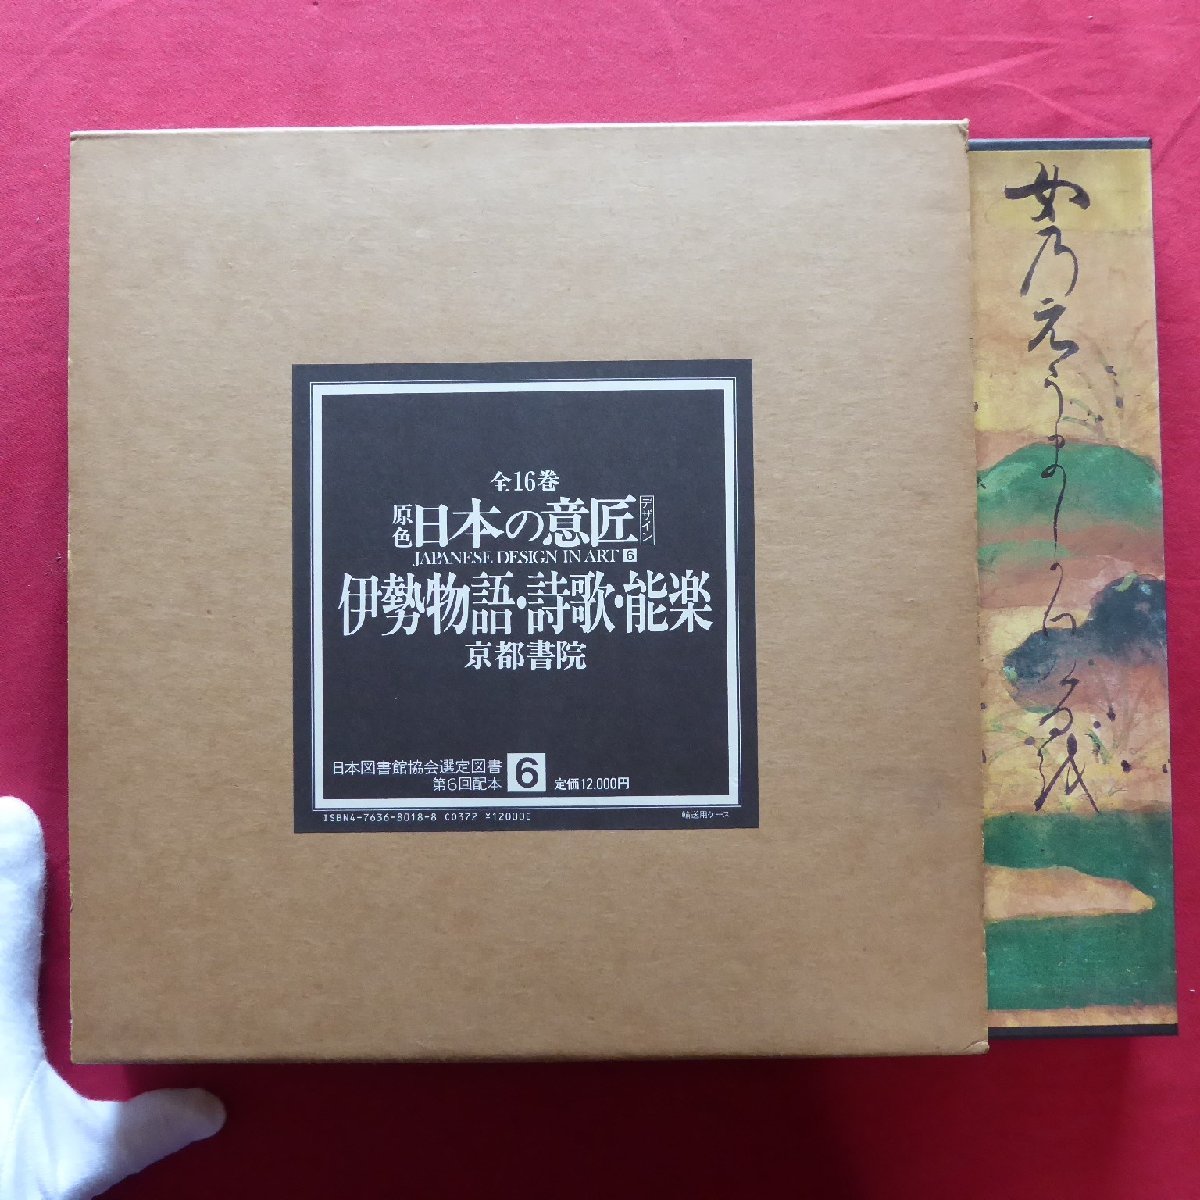 Grande 22 [Color primario Diseño japonés 6 - Tales of Ise, Poesía, Noh/Kyoto Shoin, 1984] Diseño/Pintura/Lacados/Metalurgia/Teñido y tejido/Orígenes de la pintura y el diseño clásicos, Libro, revista, arte, Entretenimiento, diseño